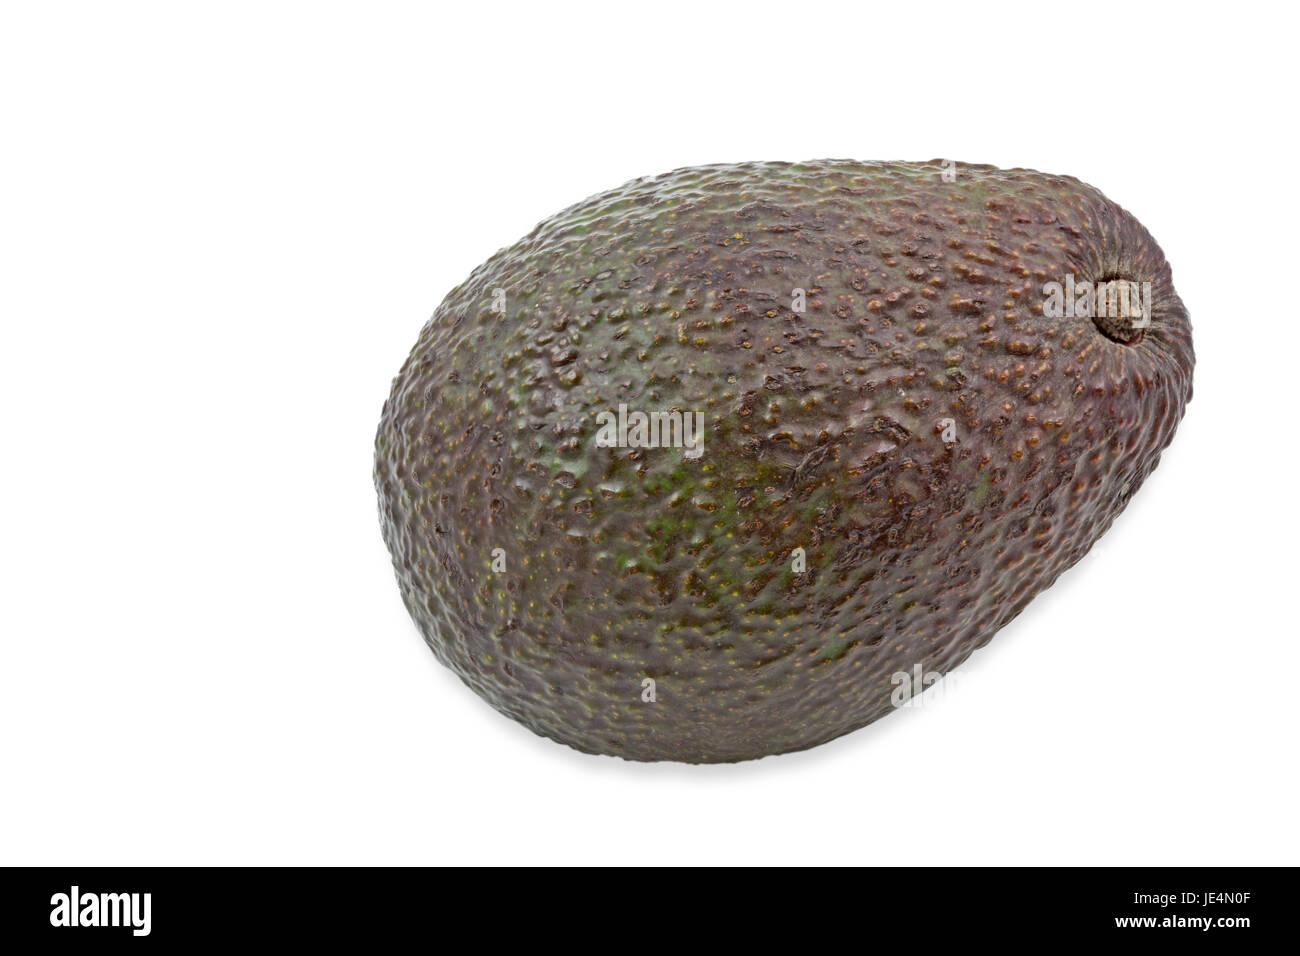 Eine reife Avocado auf weißem Hintergrund Stock Photo